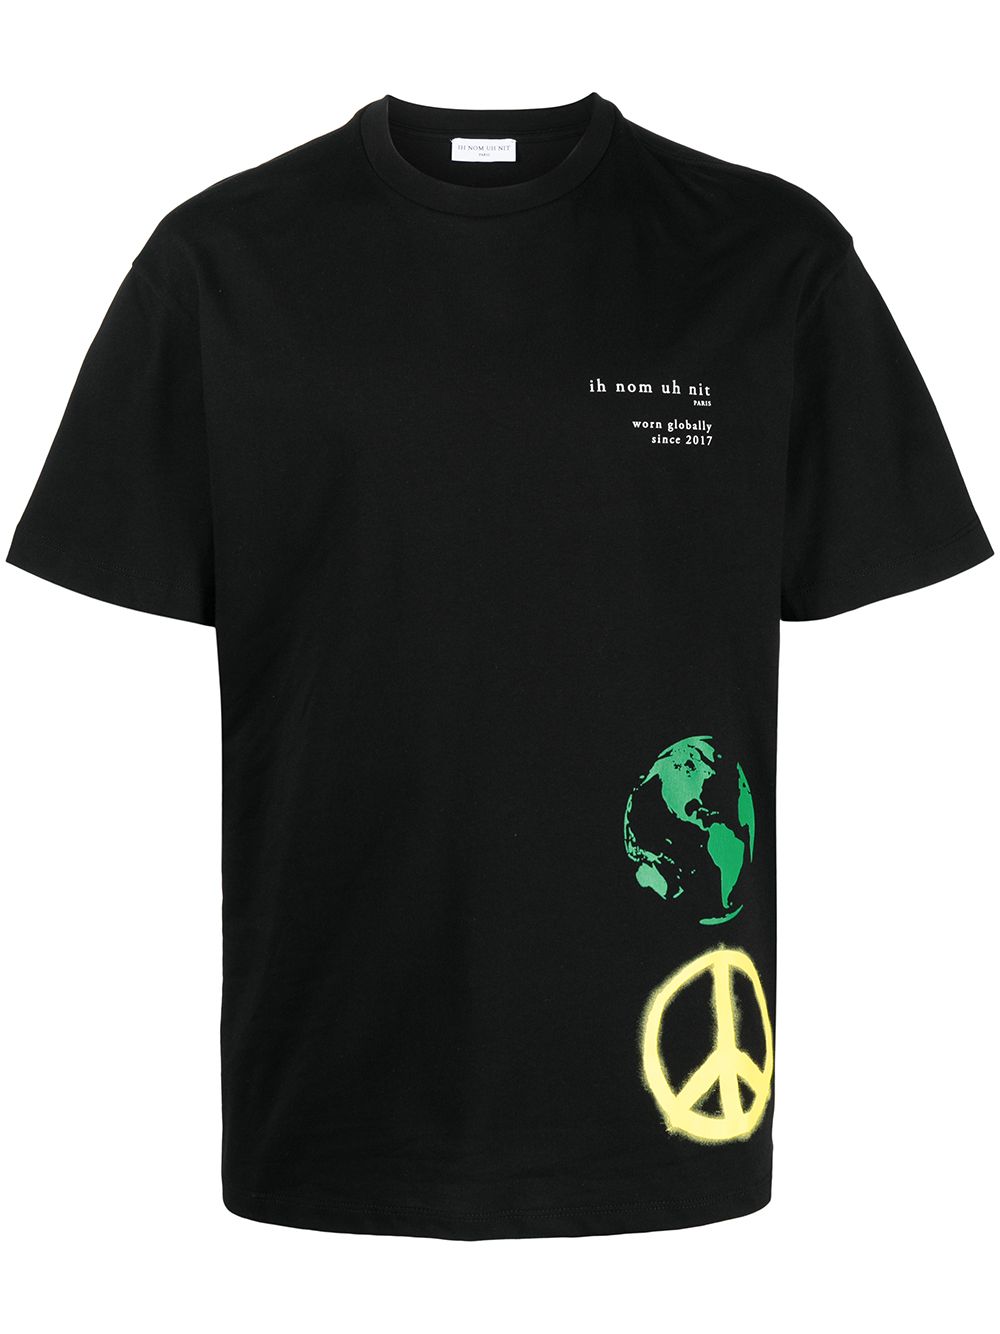 фото Ih nom uh nit футболка world peace с логотипом